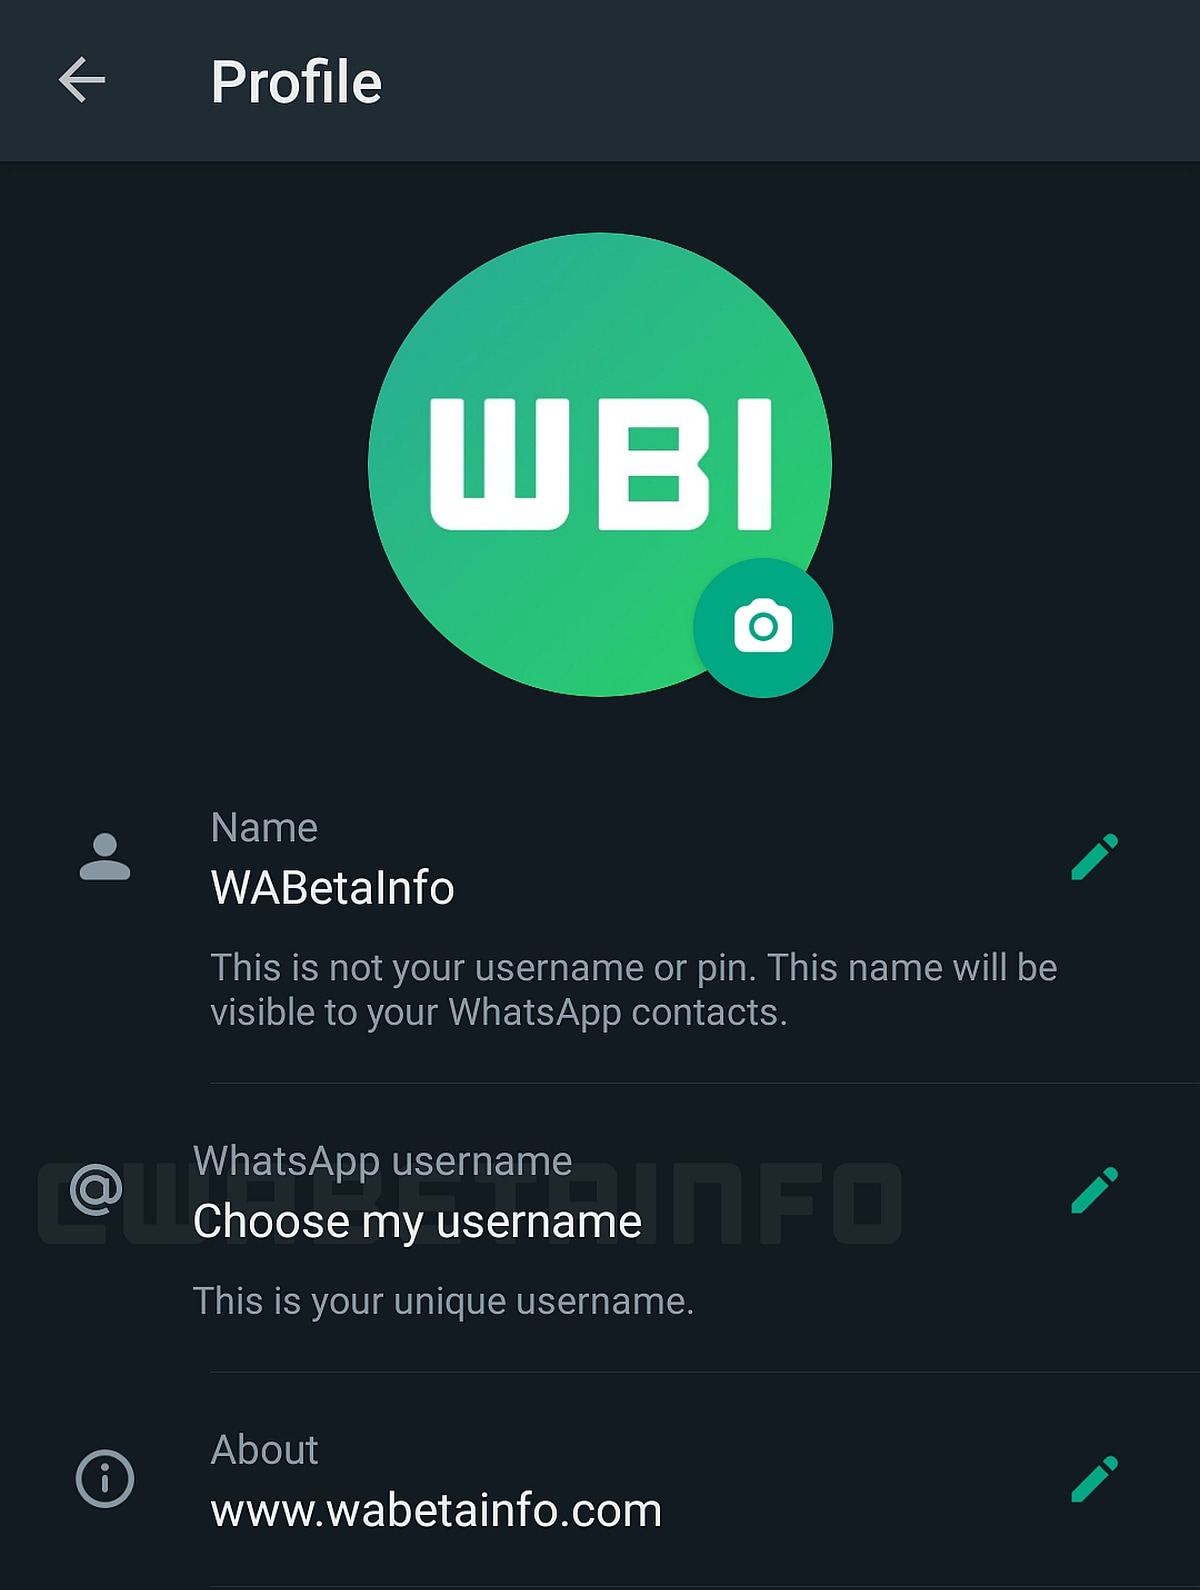 اسم مستخدم whatsapp android beta wabetainfo whatsapp username